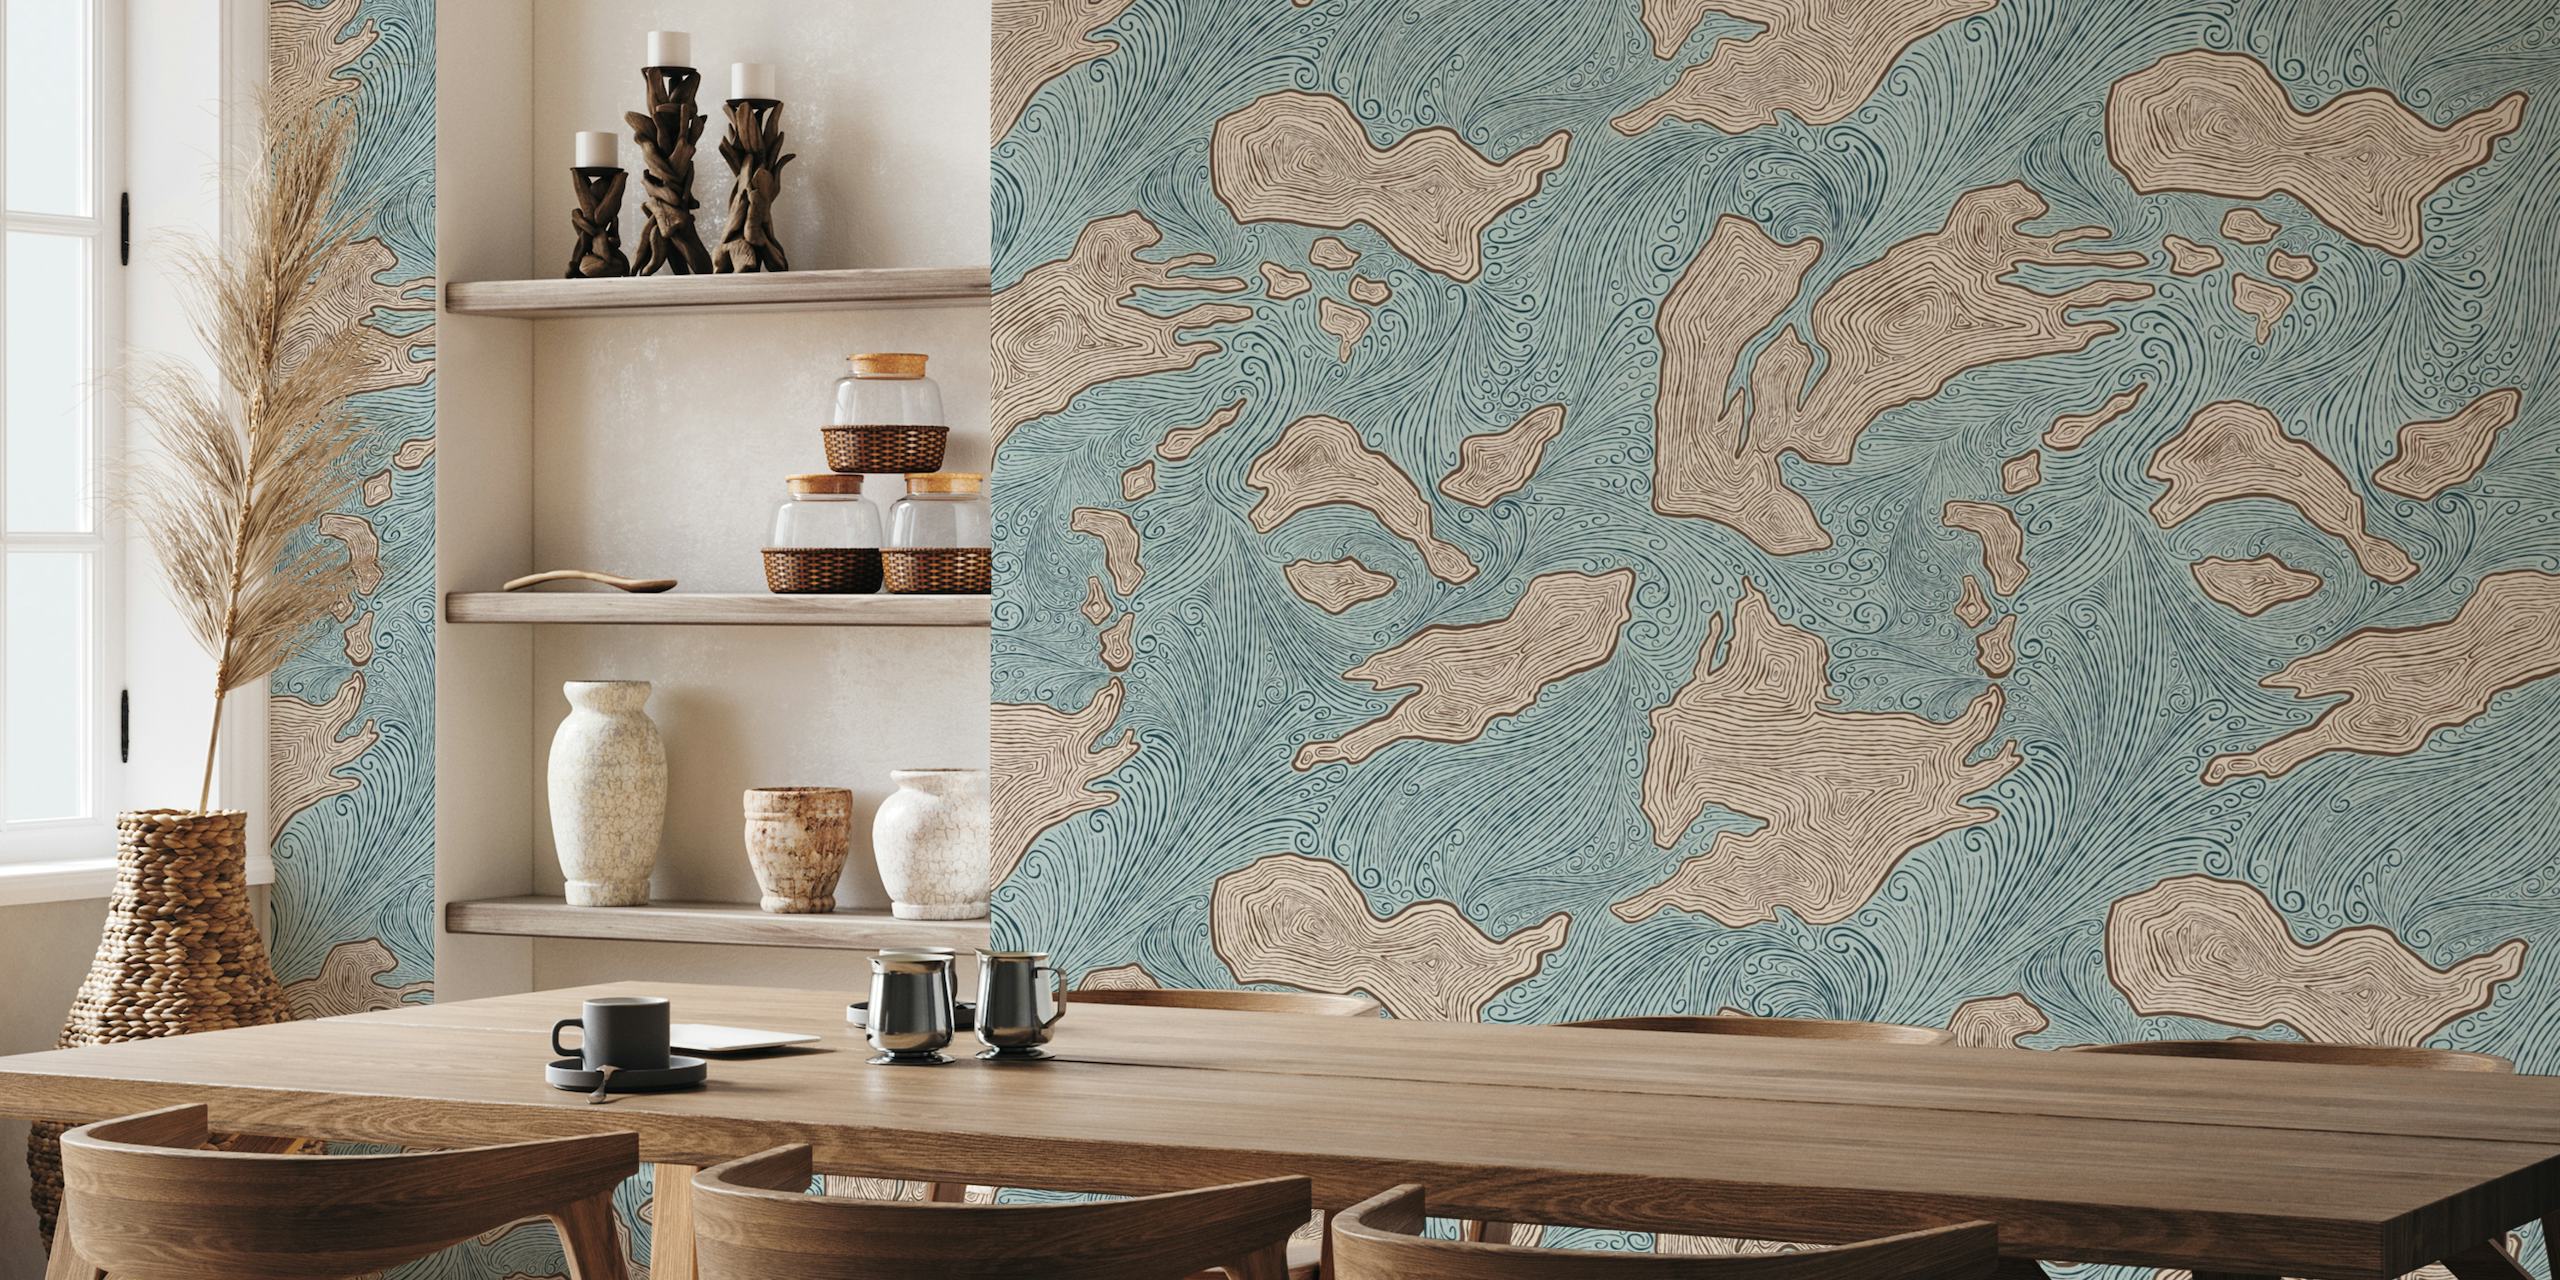 Mural de pared con formas de islas abstractas en relajantes azules y tonos tierra llamado 'Islas no descubiertas'.